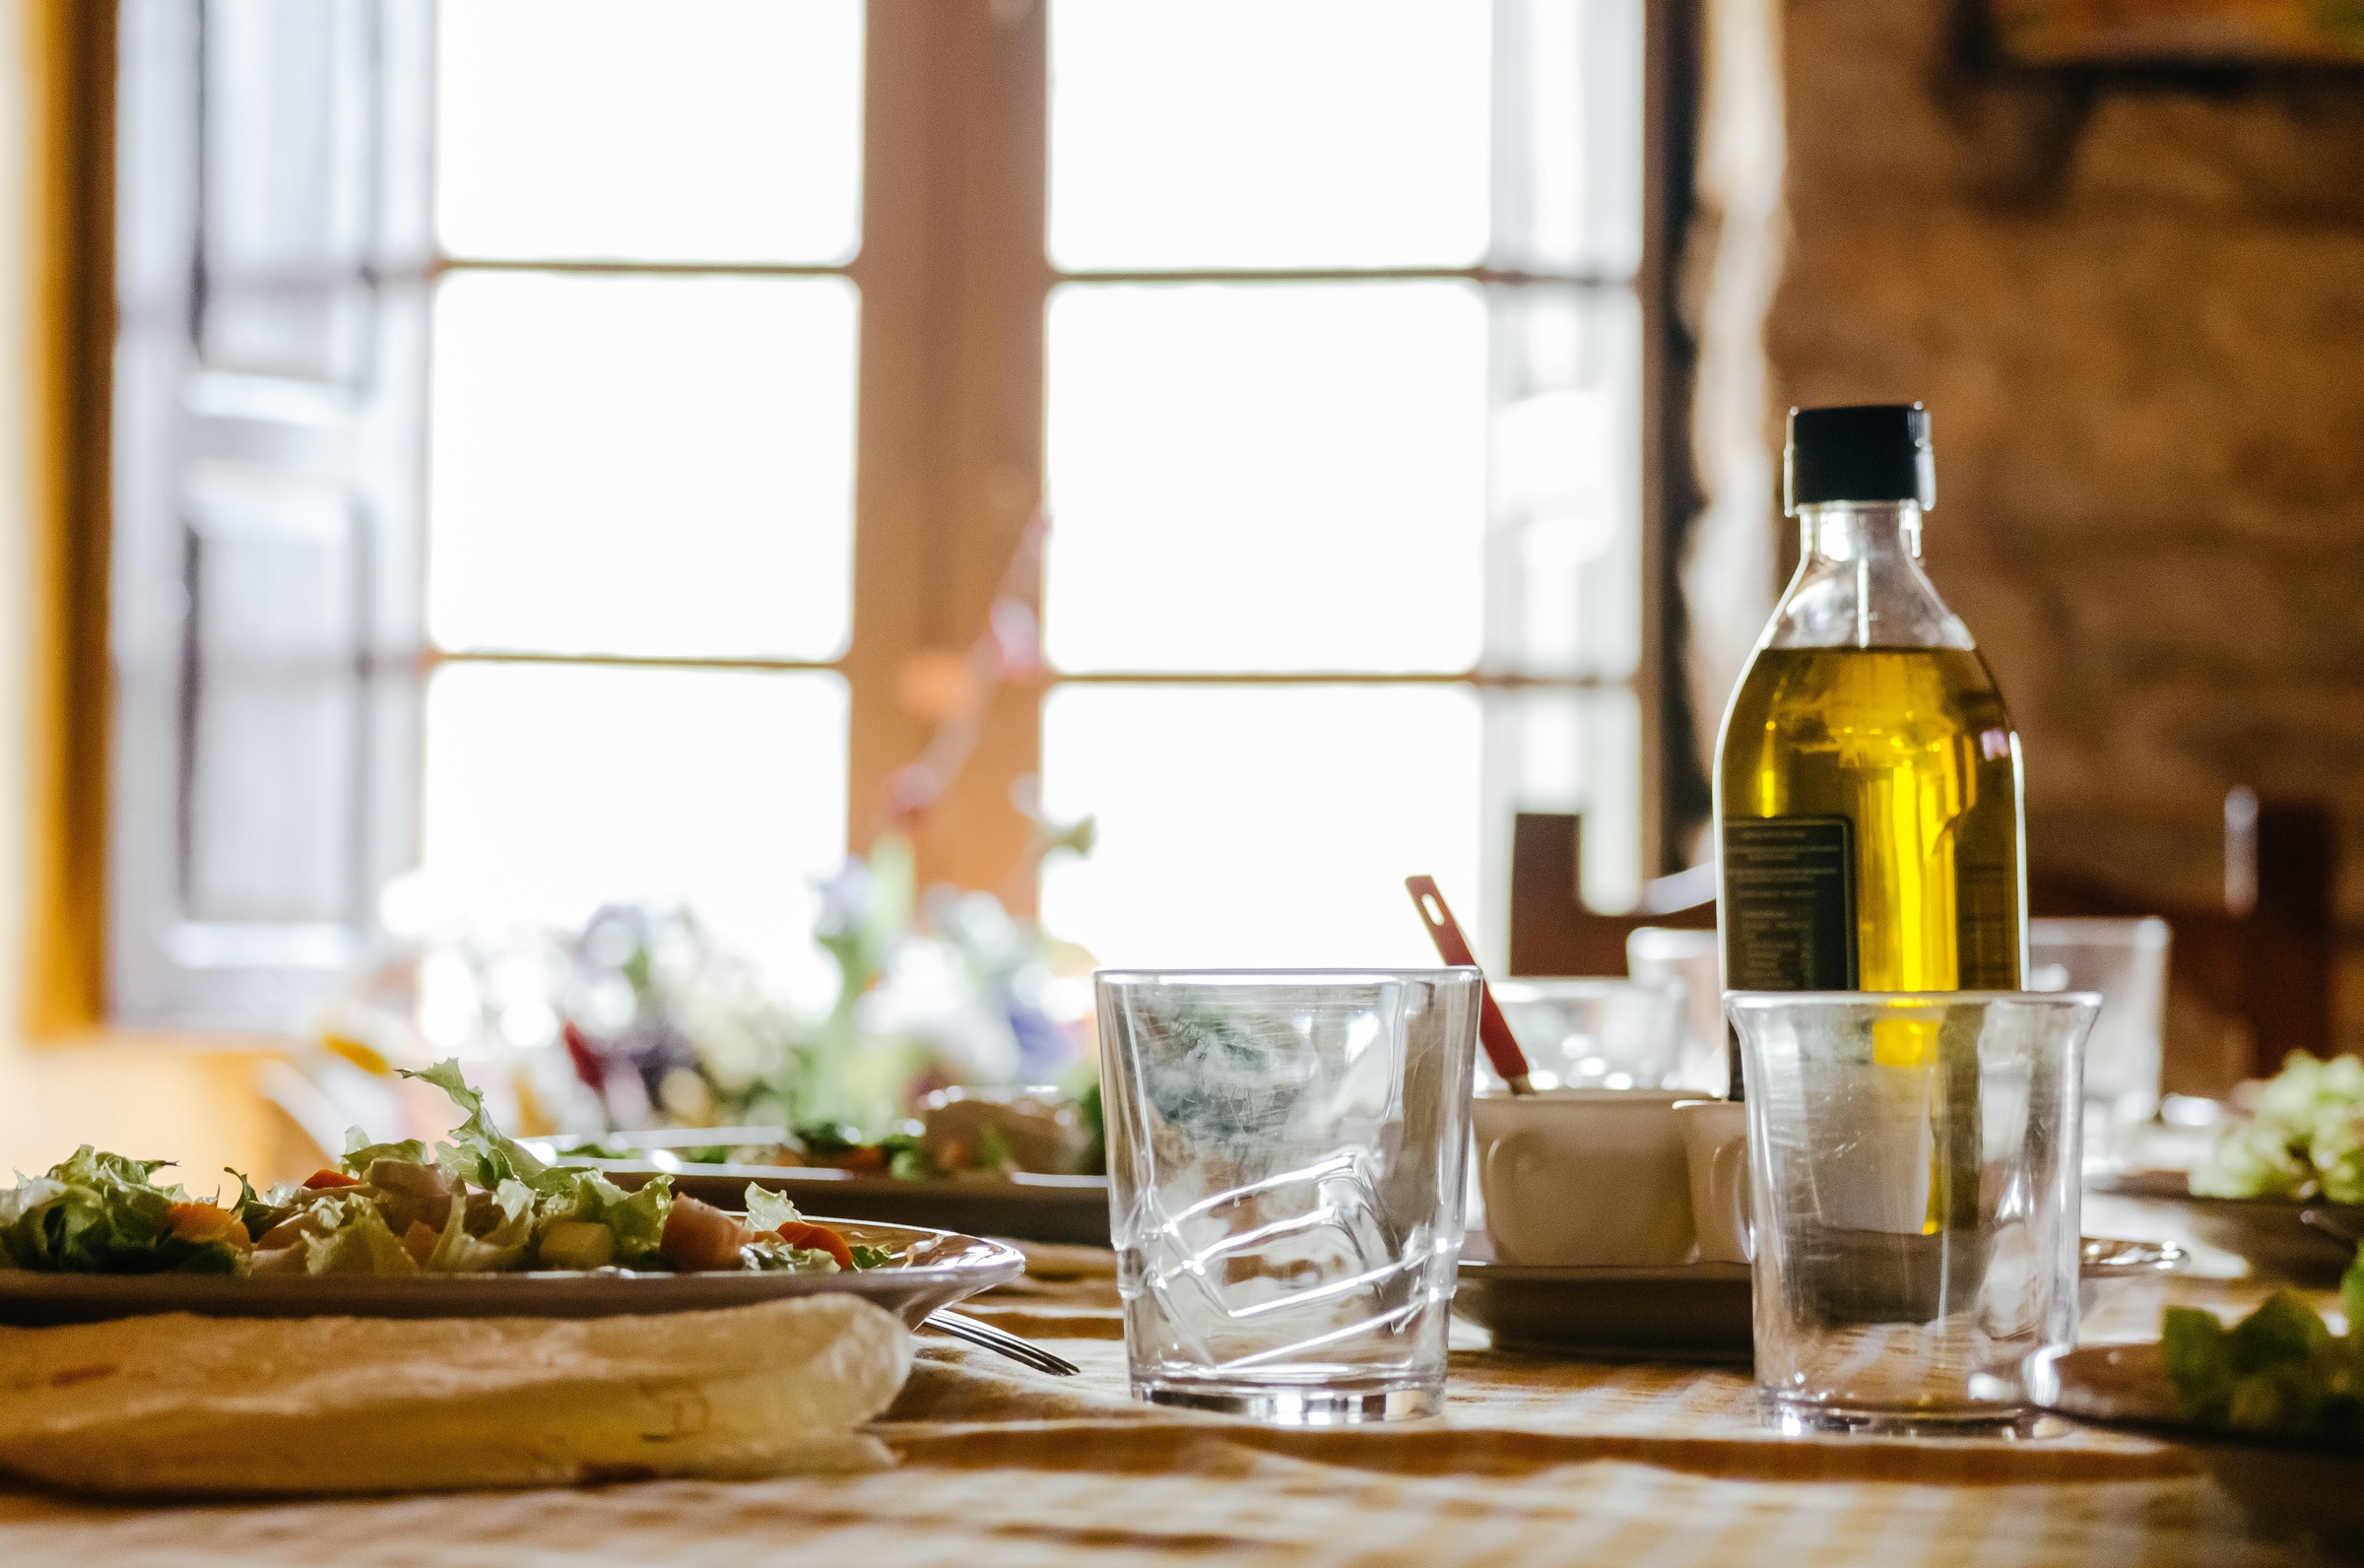 Оливковое масло содержит всё необходимое для здоровой и долгой жизни. Фото © Unsplash